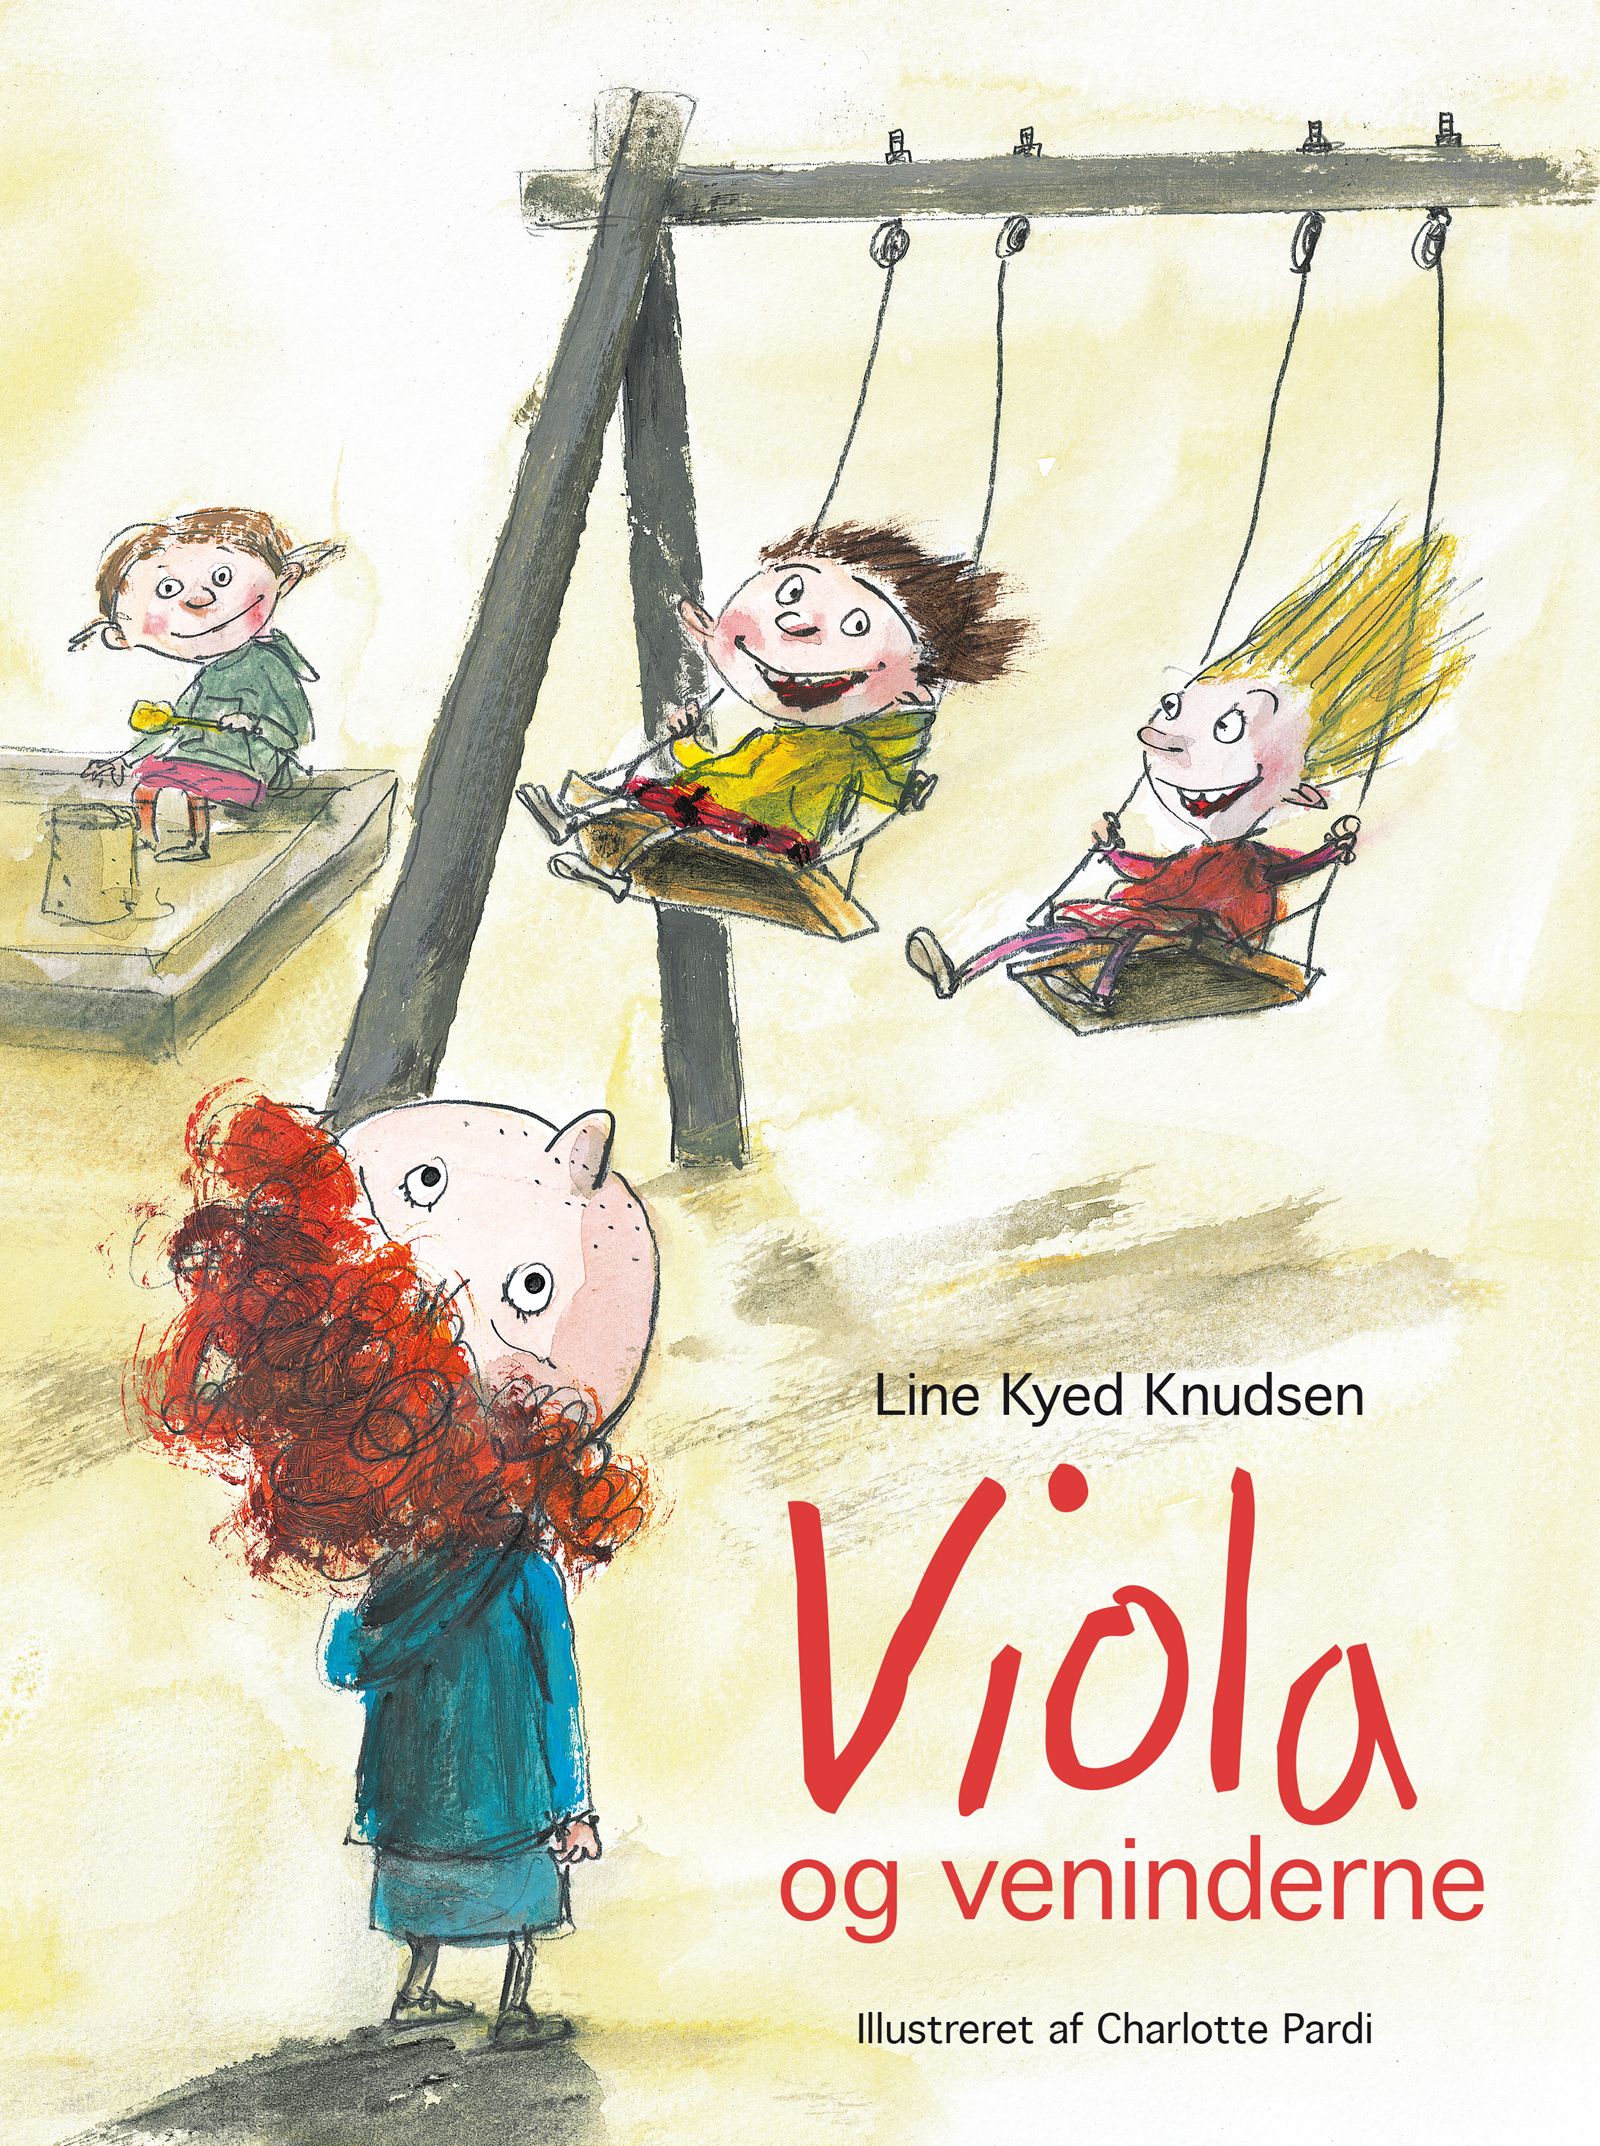 Viola og veninderne, e-bok av Line Kyed Knudsen